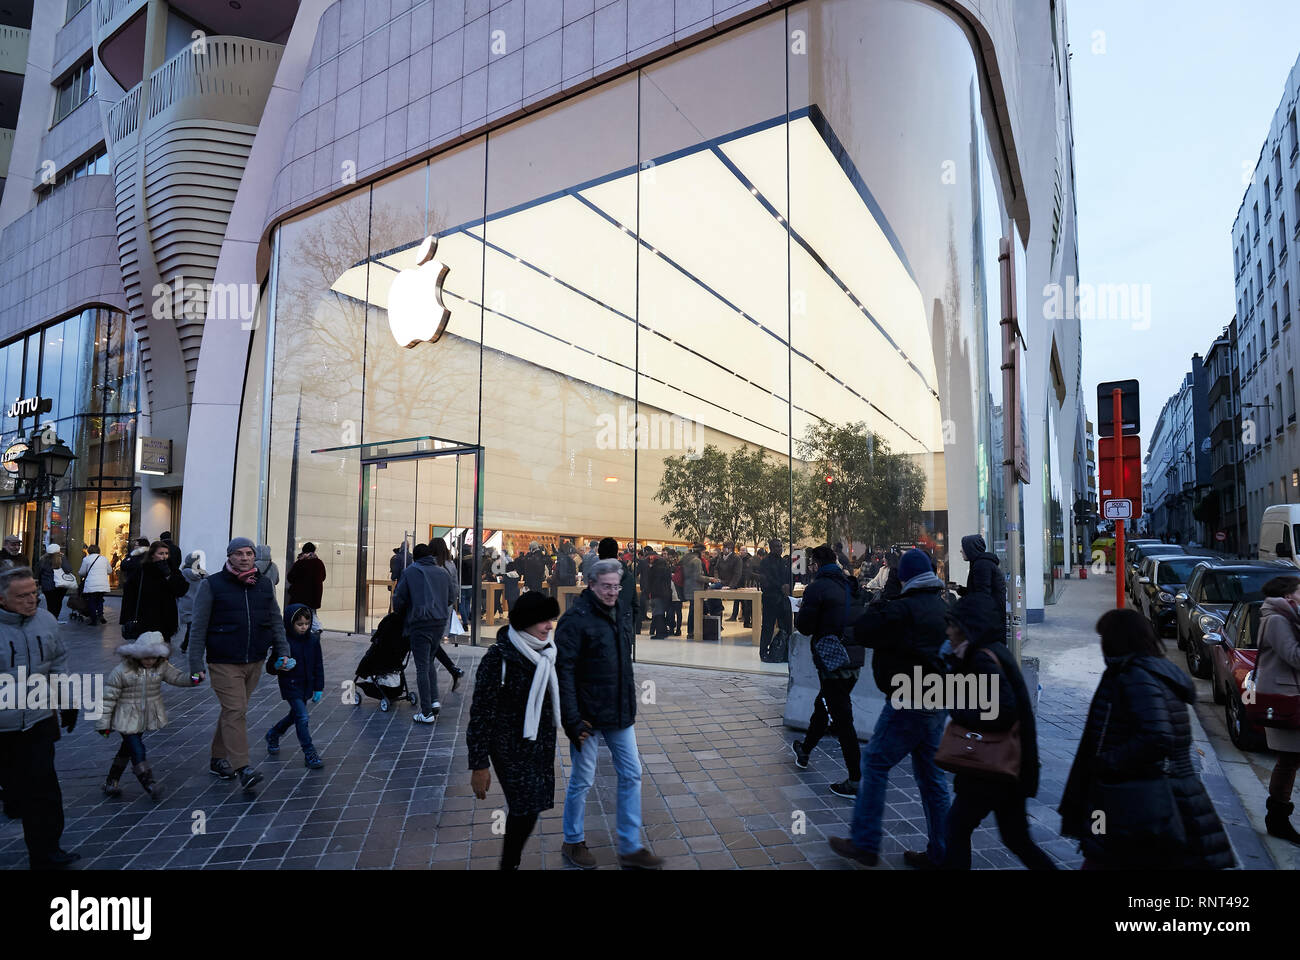 15.12.2018, Bruxelles, Bruxellescapitale, Belgio - passanti nella parte anteriore del negozio Apple Store su Avenue de la Toison d'Or. 00R181215D065CAROEX.JPG [MODELLO R Foto Stock